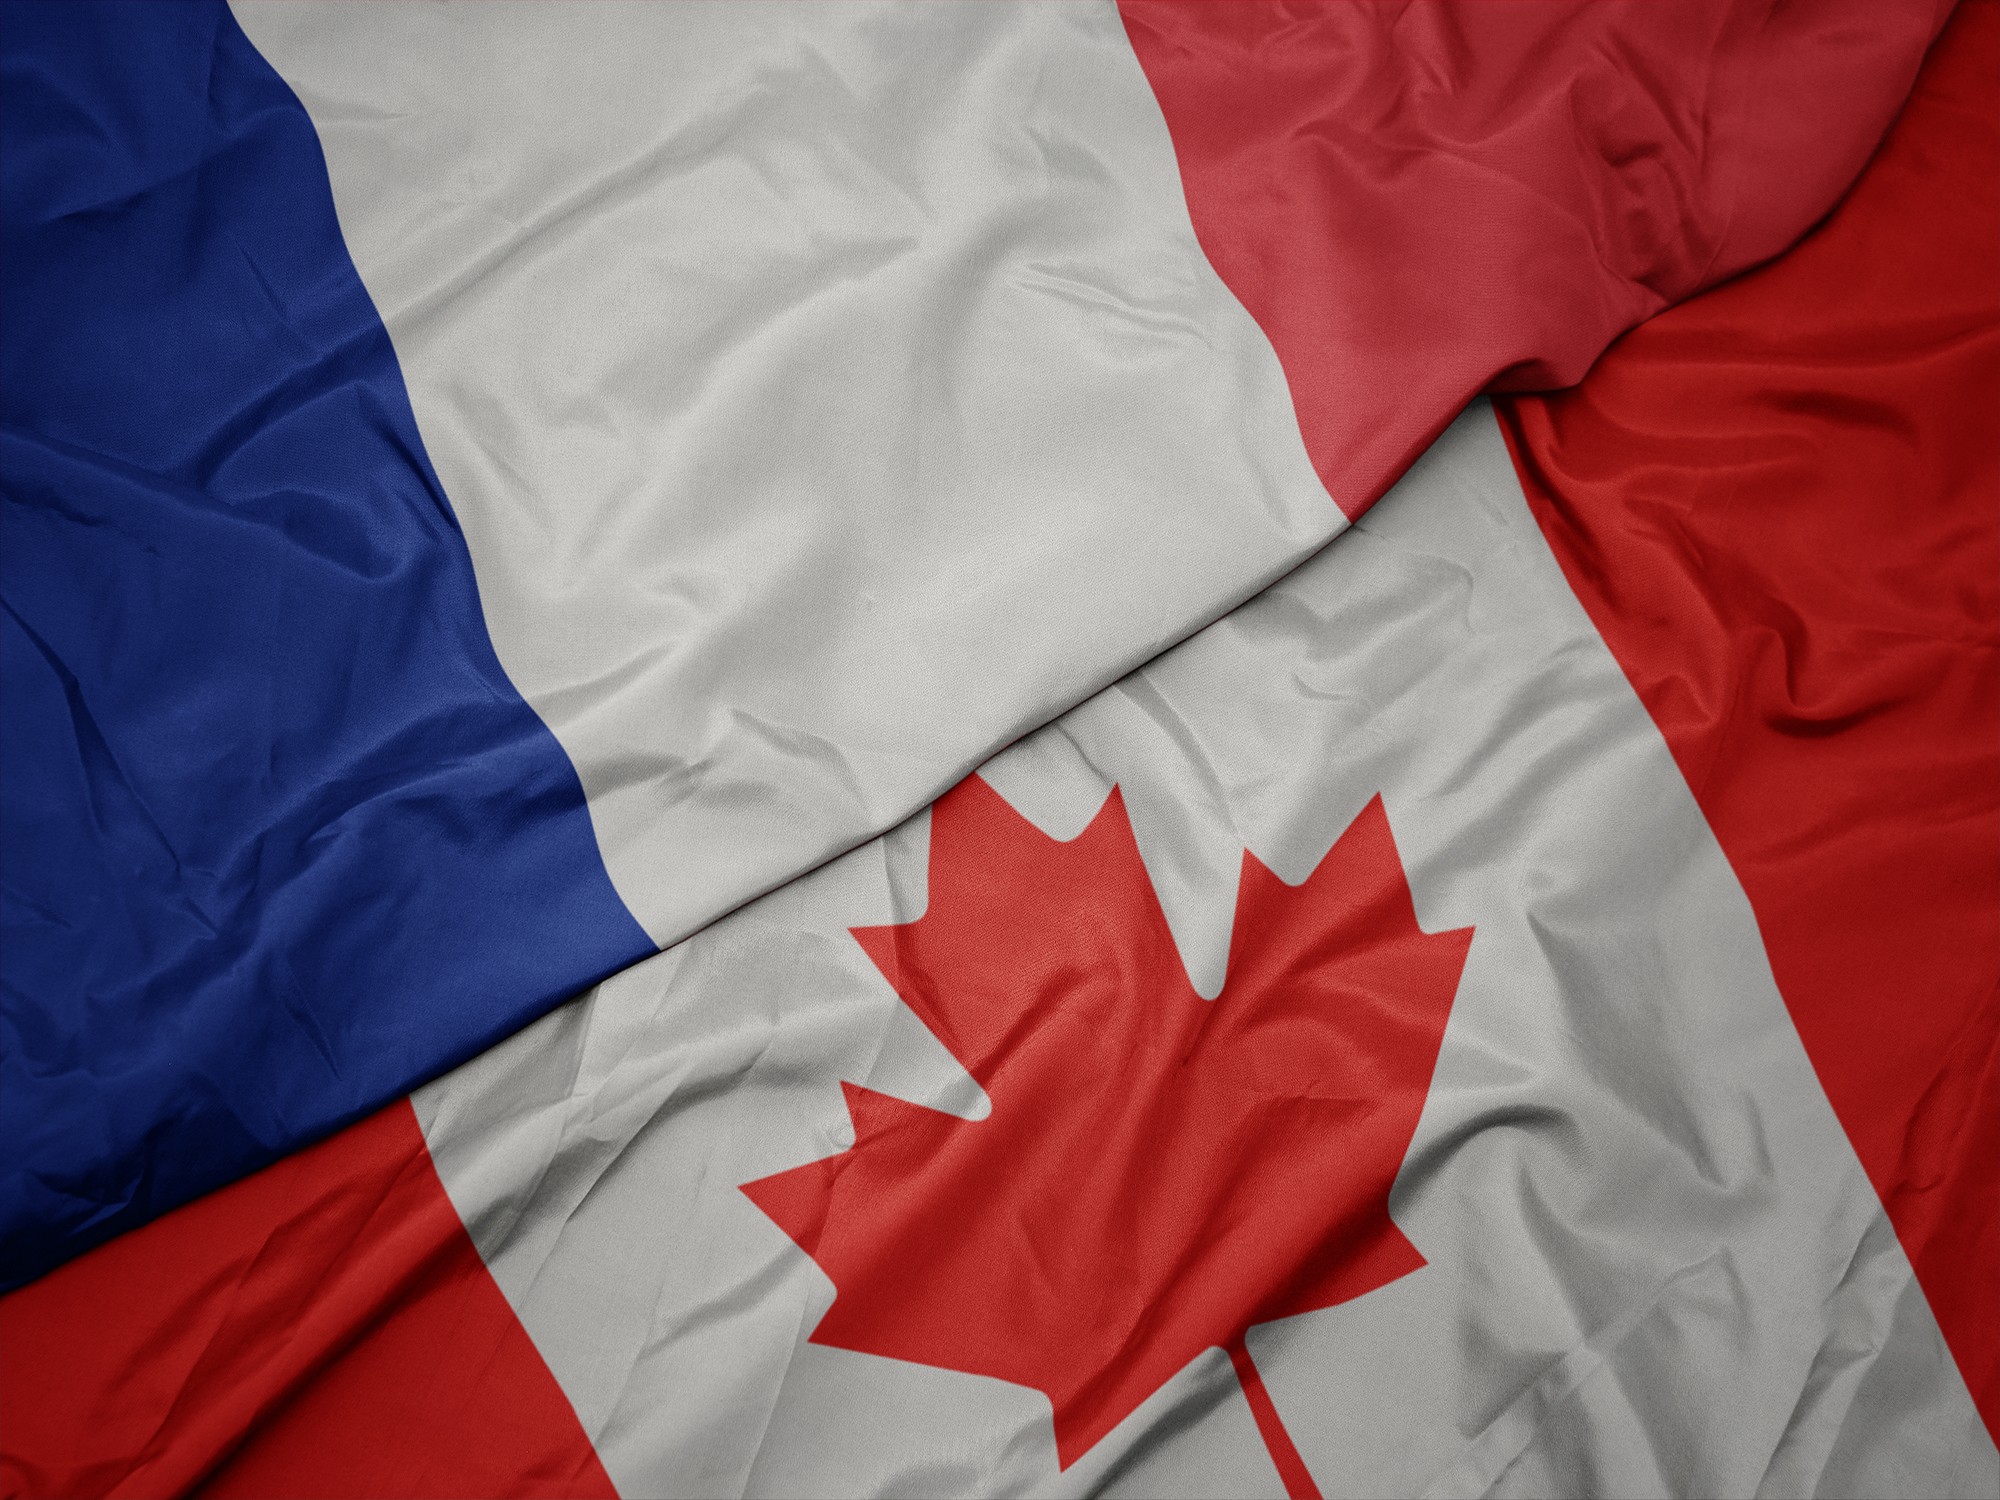 Pour contrer le déclin du français, le Canada mise sur l’immigration